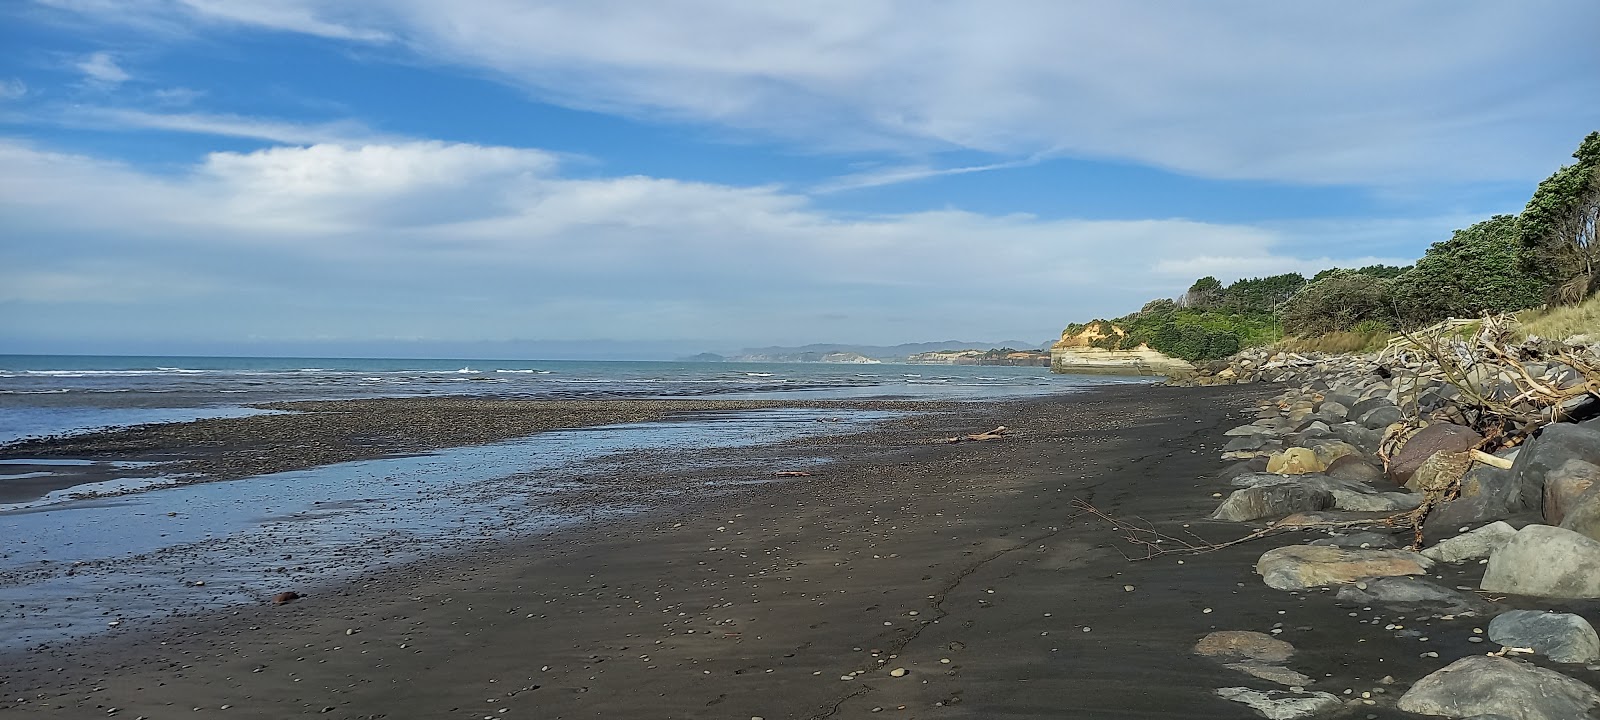 Urenui Beach'in fotoğrafı ve yerleşim